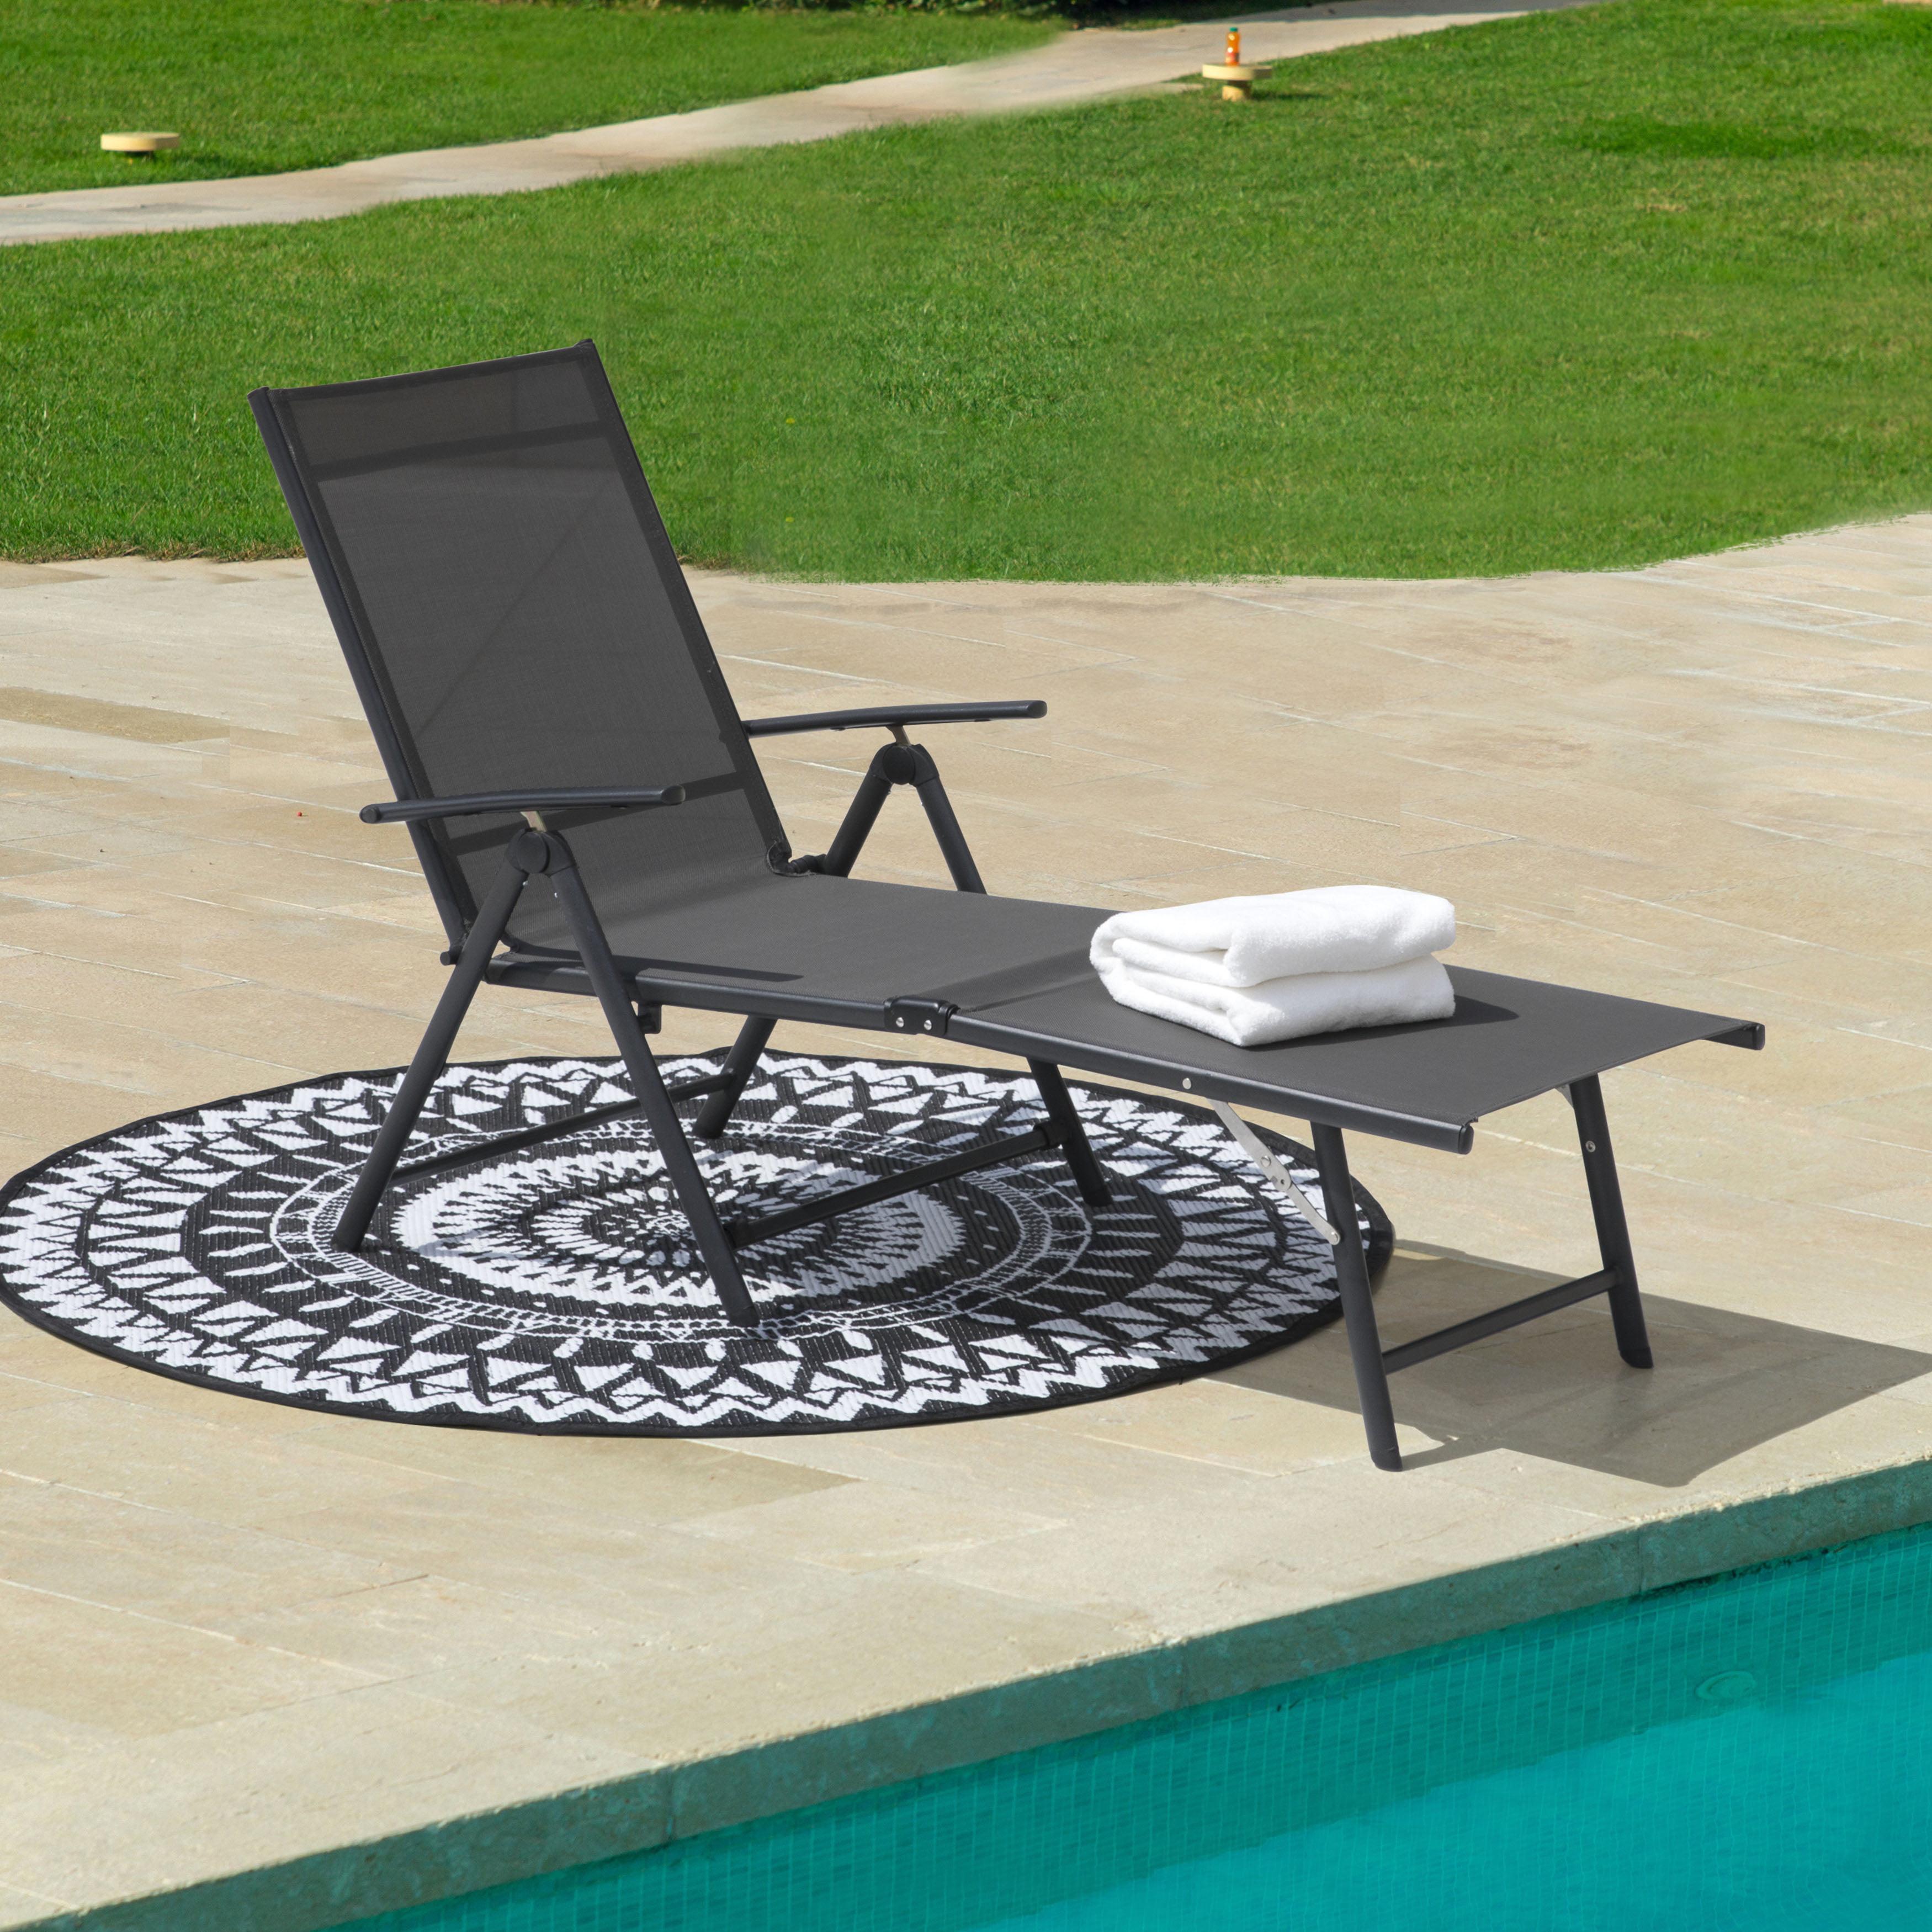 Recliner Beach Chair Bed Garden Patio Outdoor Folding Textoline Sun Lounger 